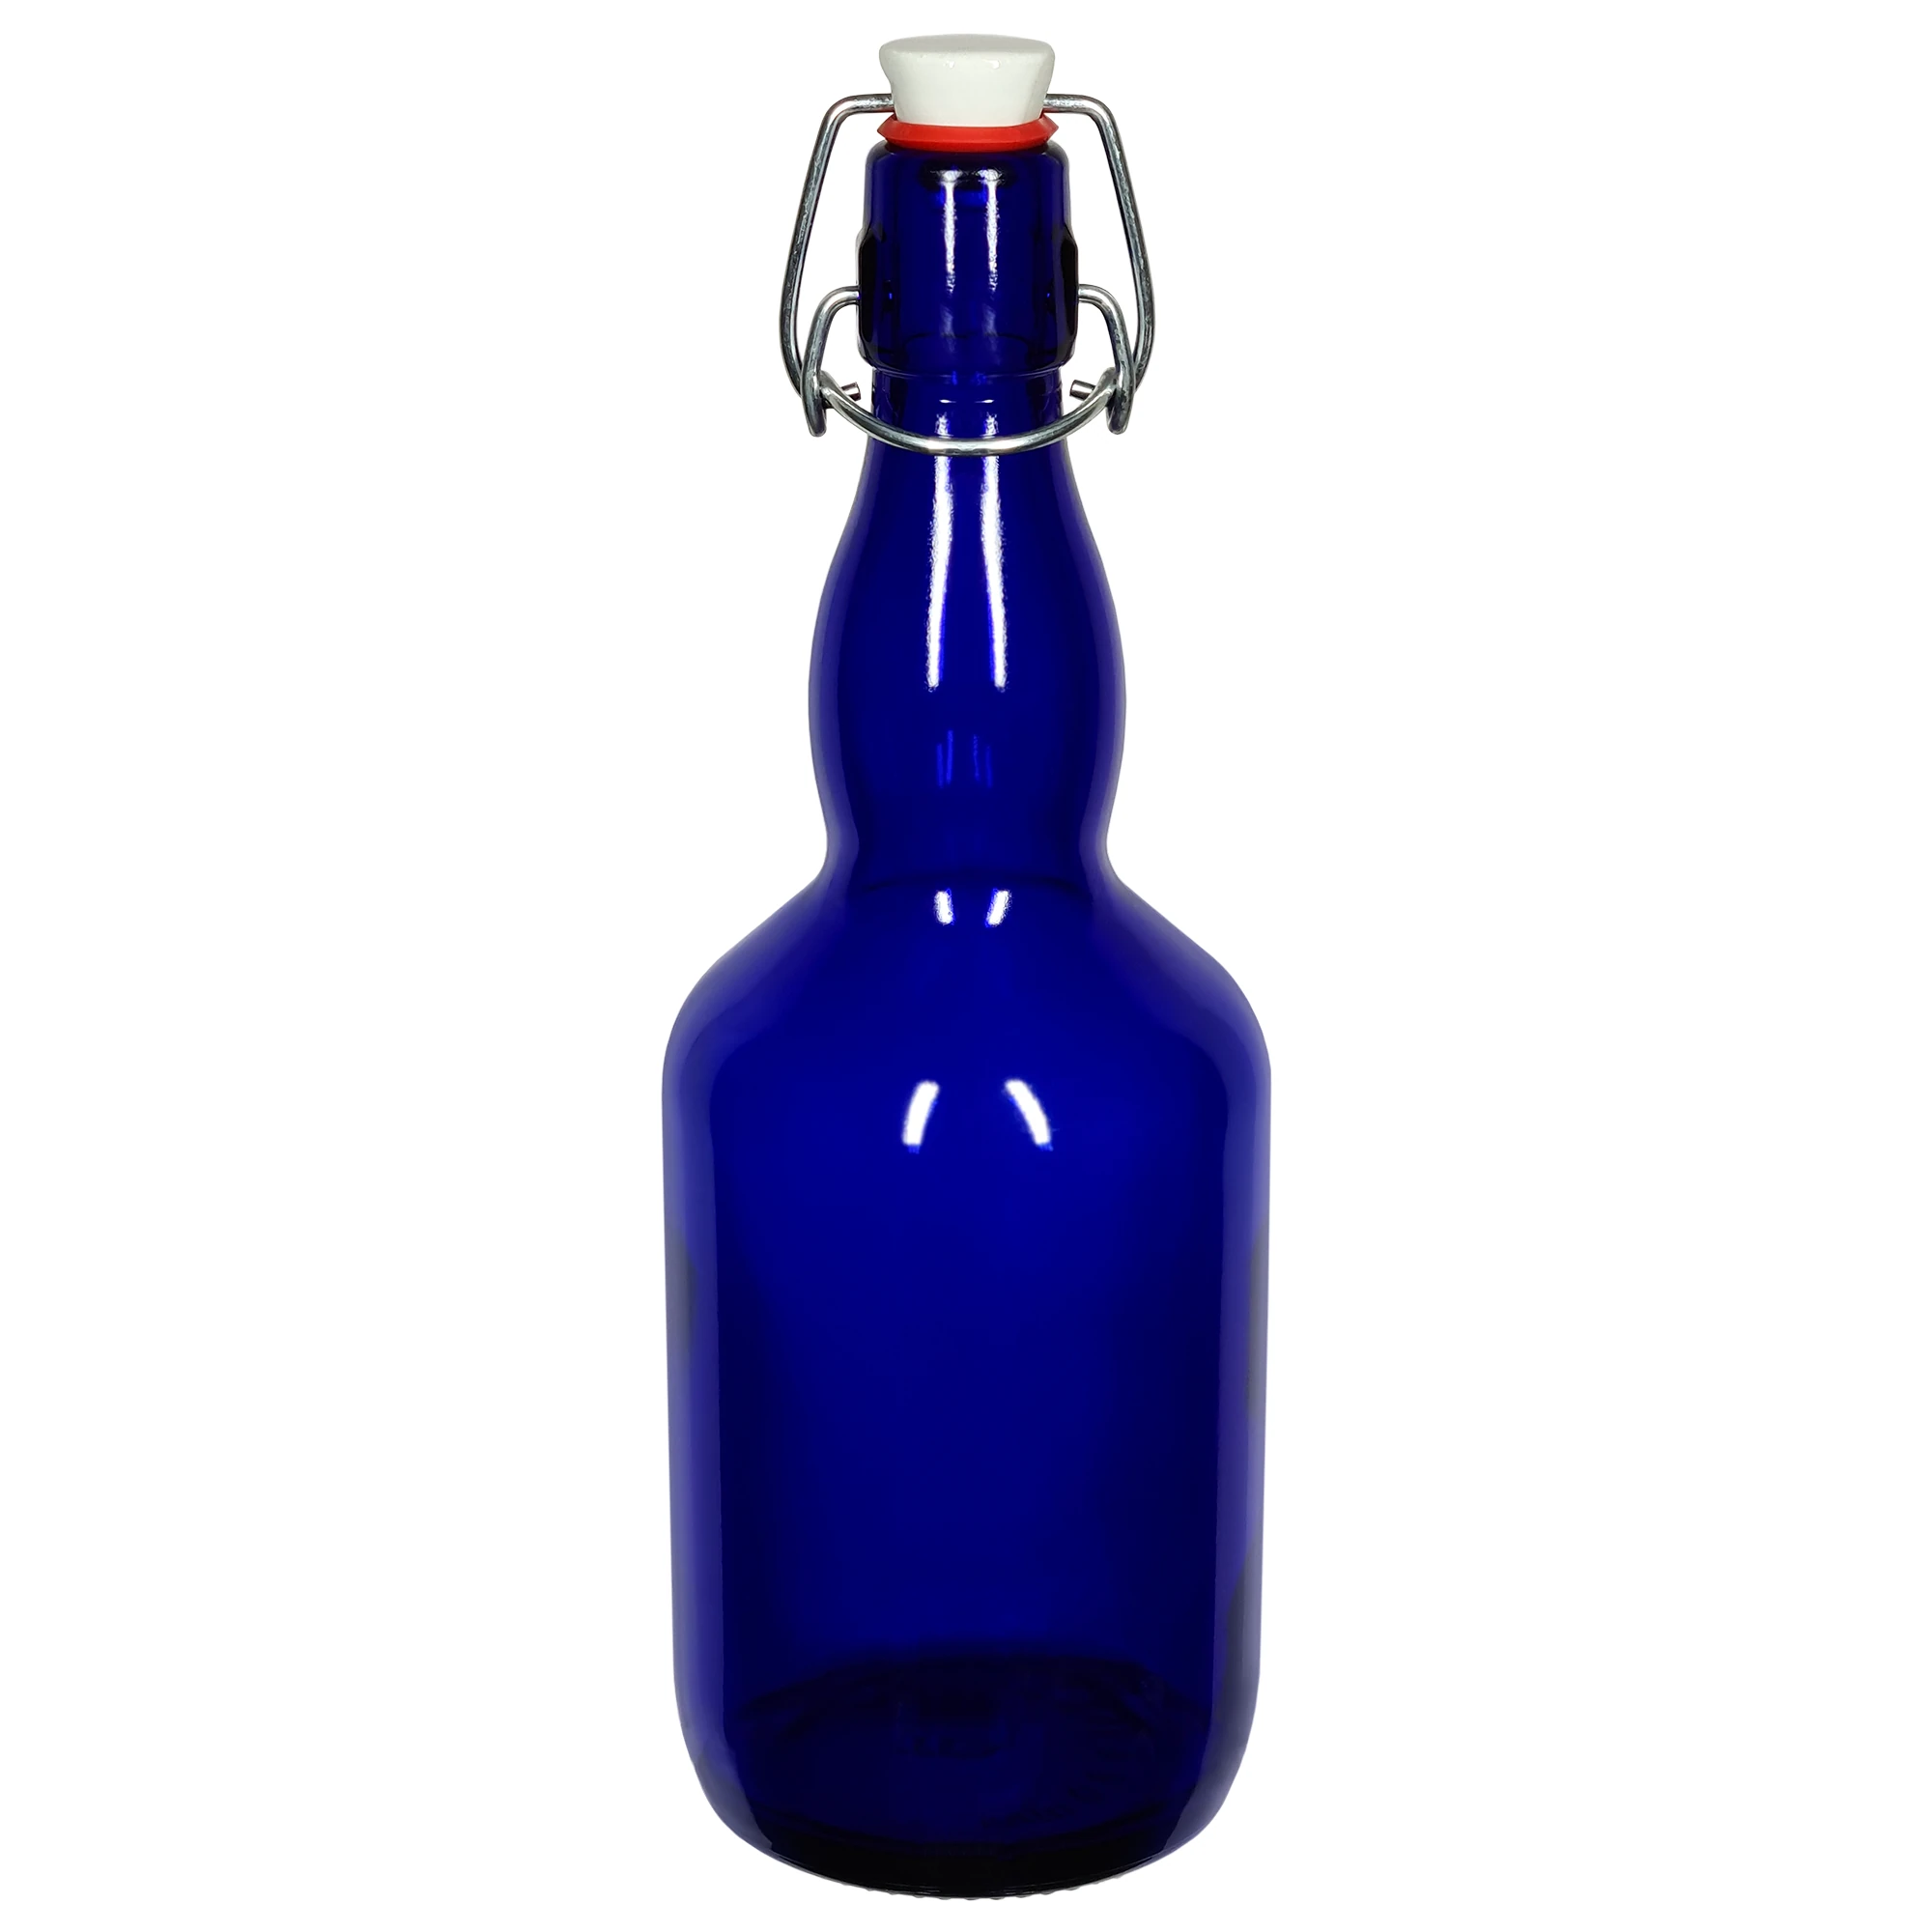 Dunkelblaue, fast undurchsichtige, Glasflasche. Die Flasche ist bauchig und hat einen längeren Hals. Der Bügelverschluss, mit einem weißen Keramikdeckel, ist geschlossen.